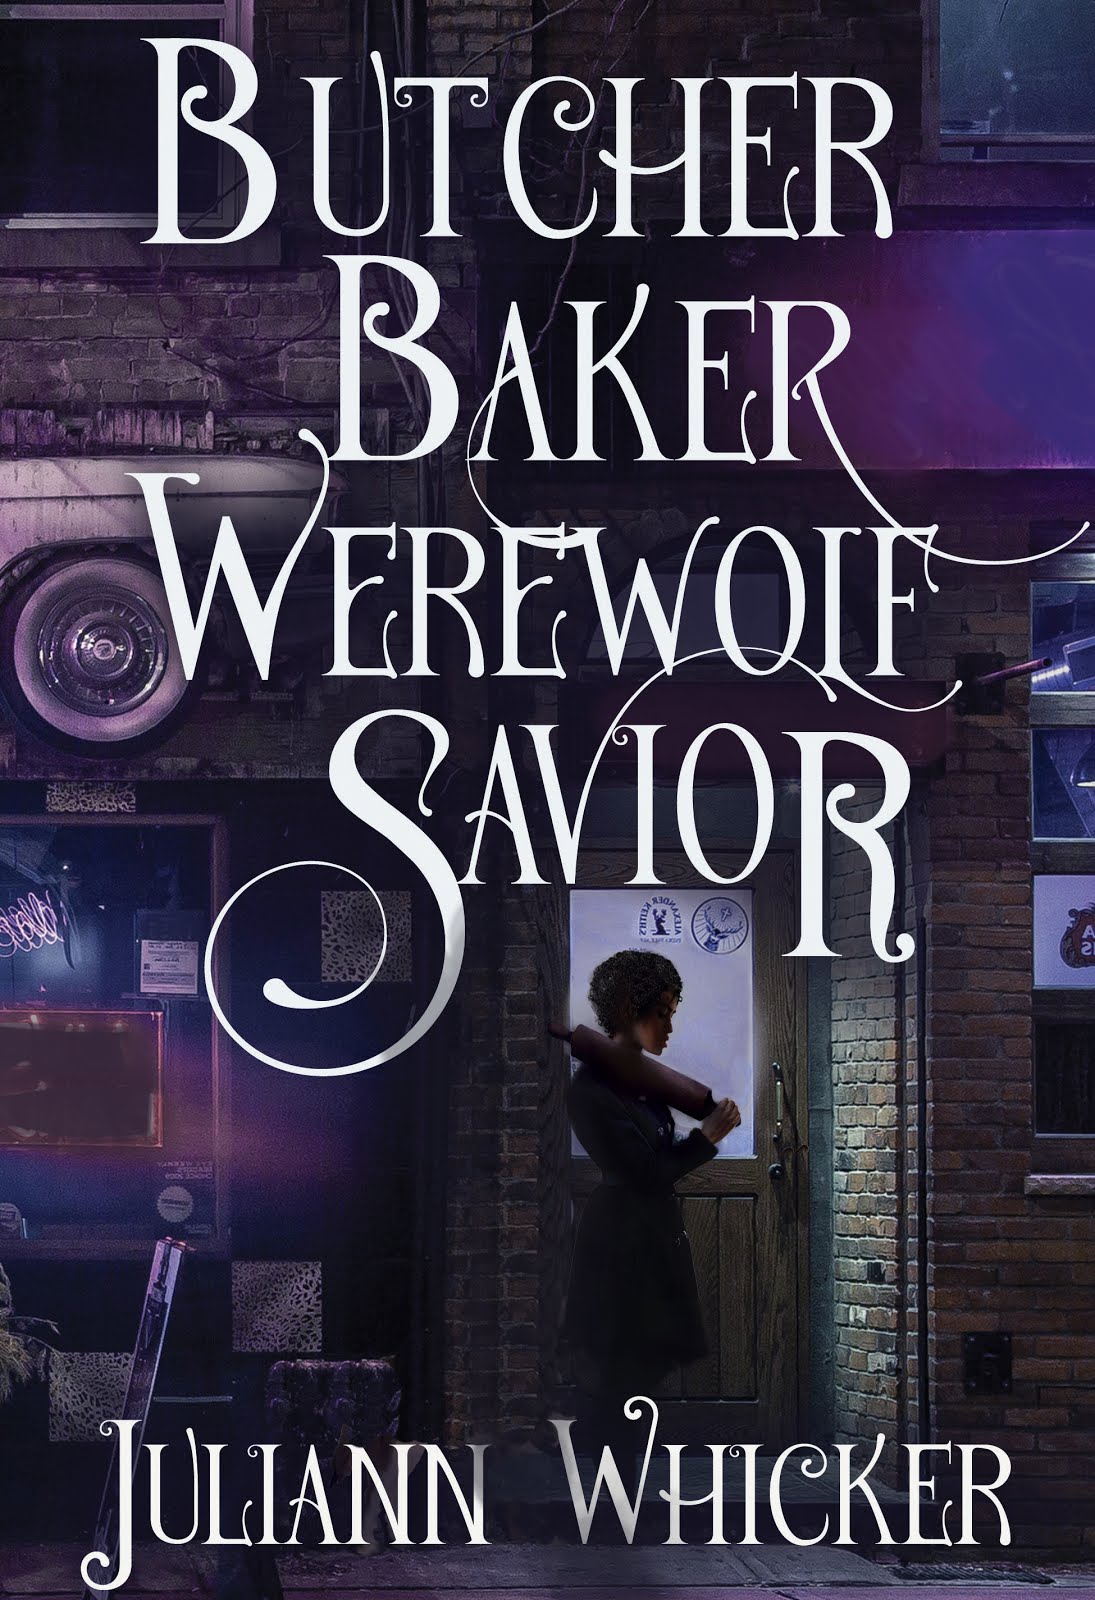 Butcher, Baker, Werewolf Savior